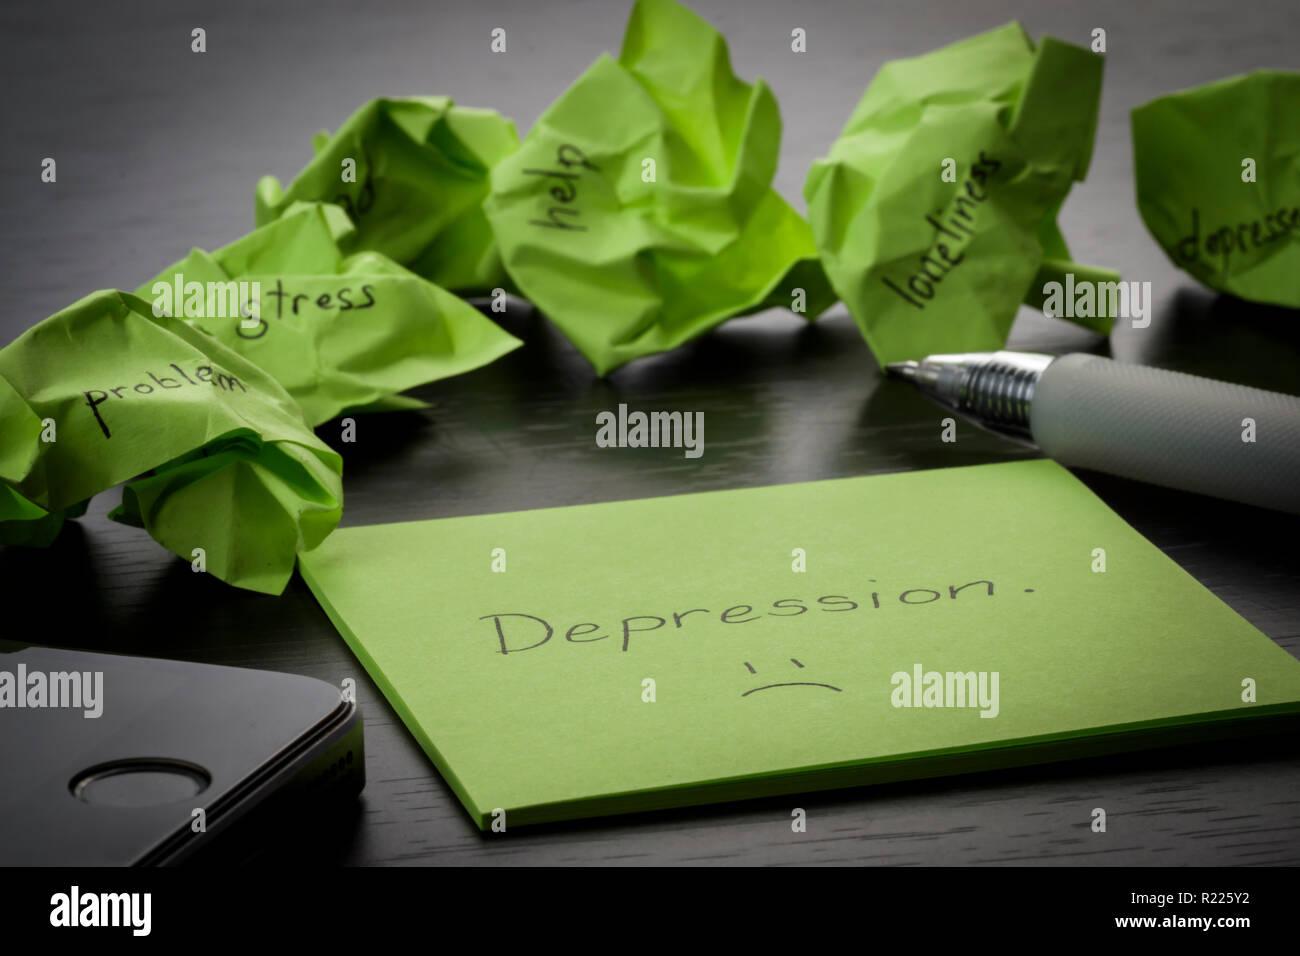 La dépression. Le terme "Dépression" est écrit sur les post-it sur le tableau noir en bois. Vert froissé les notes sont dispersés avec des textes écrits Banque D'Images